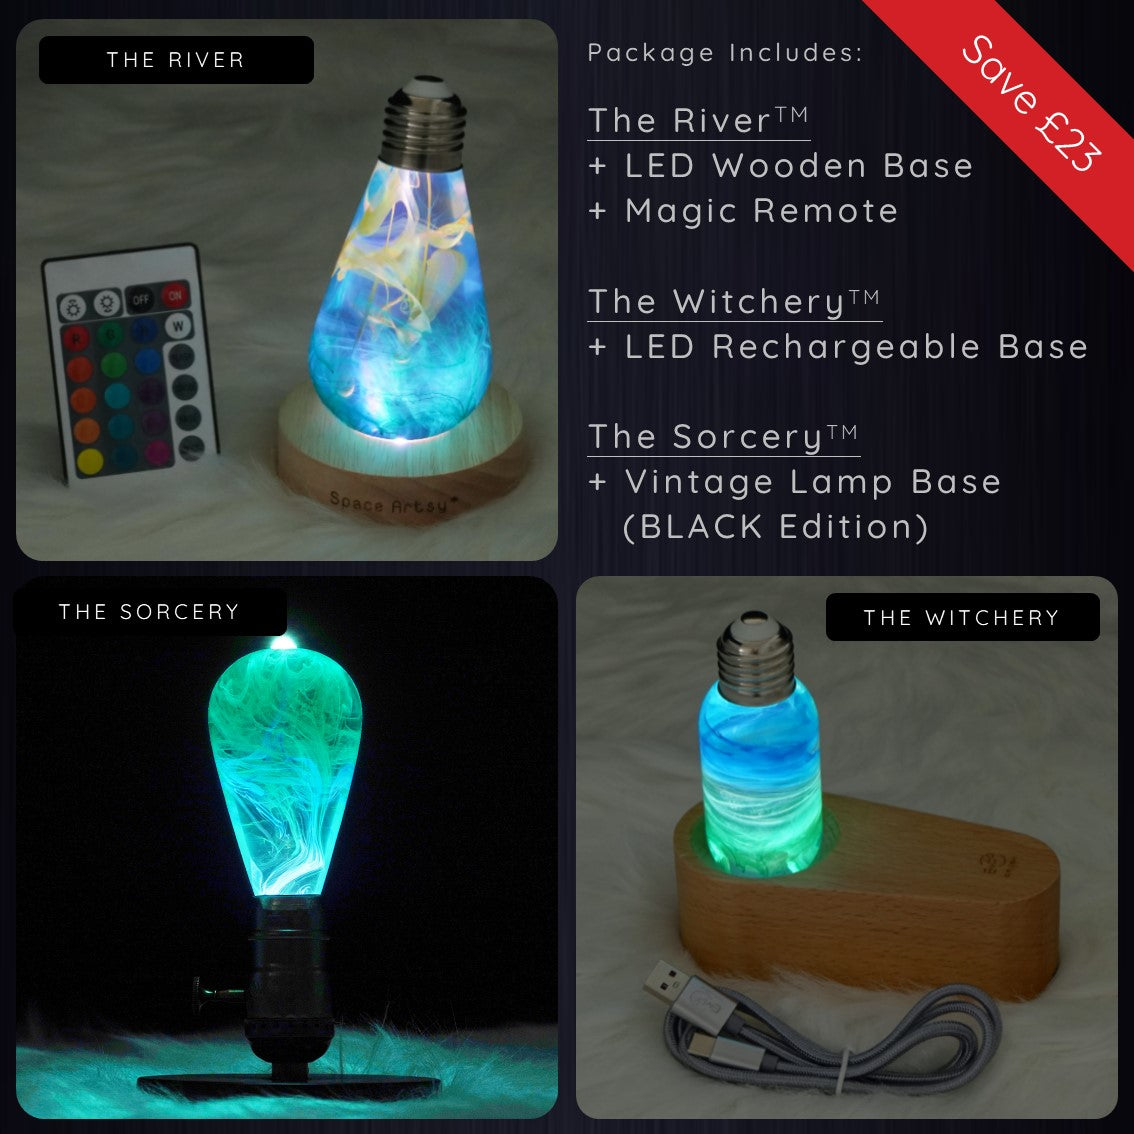 Aurora Lamp – The Artment